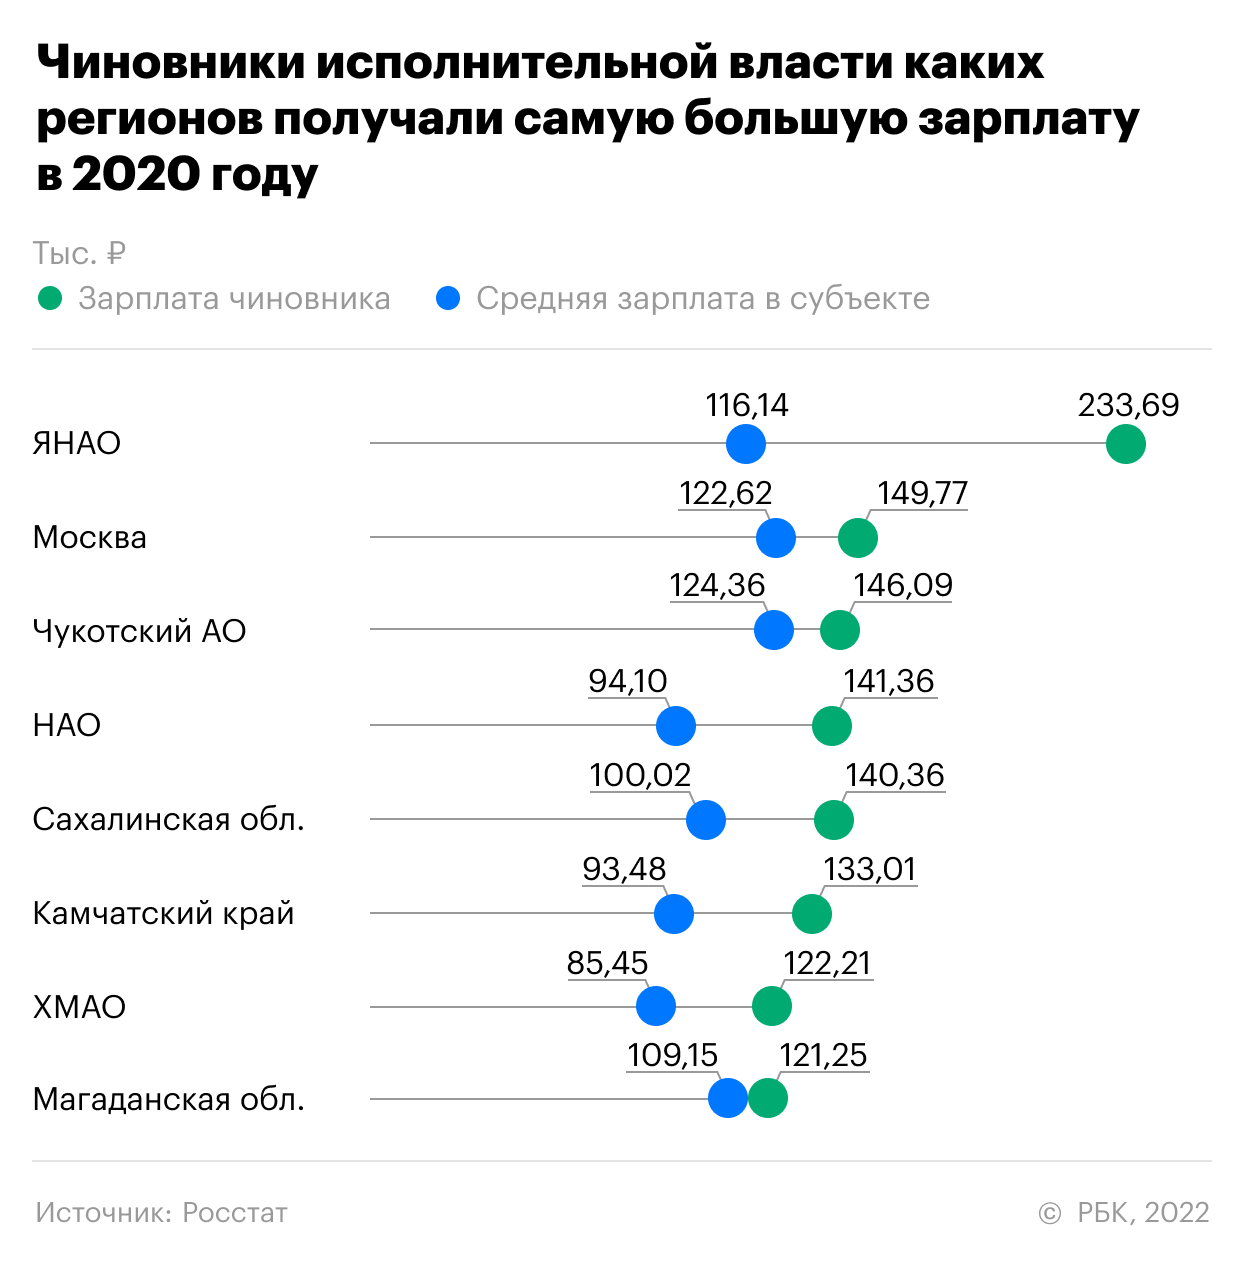 Сколько получают зарплату в россии